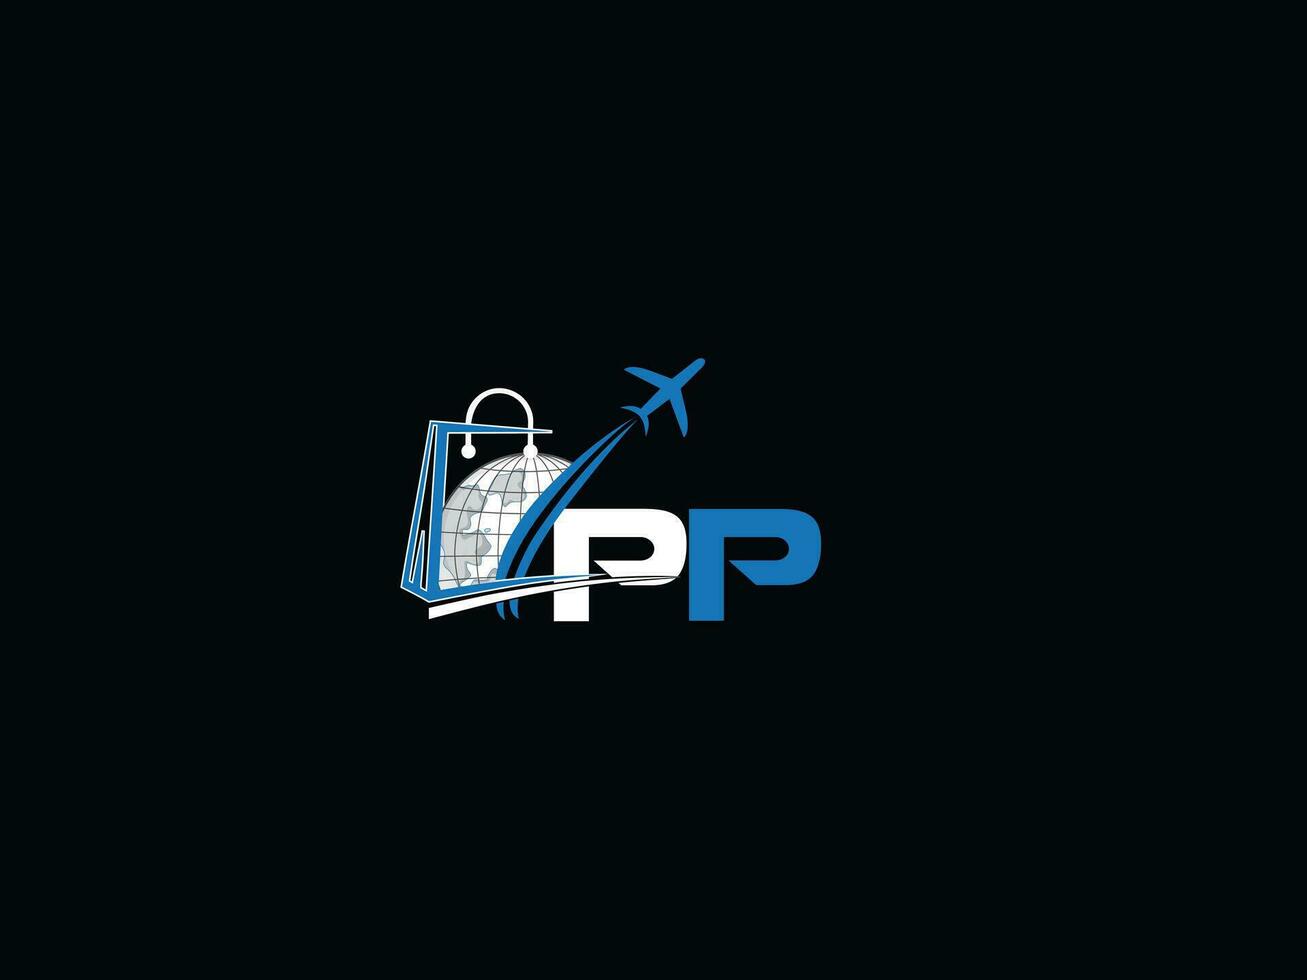 Monogram Travel Pp Logo Design, Global P Traveling Letter Logo IconaMonogram Travel P Logo Design, Global PP Traveling Letter Logo Icon vector